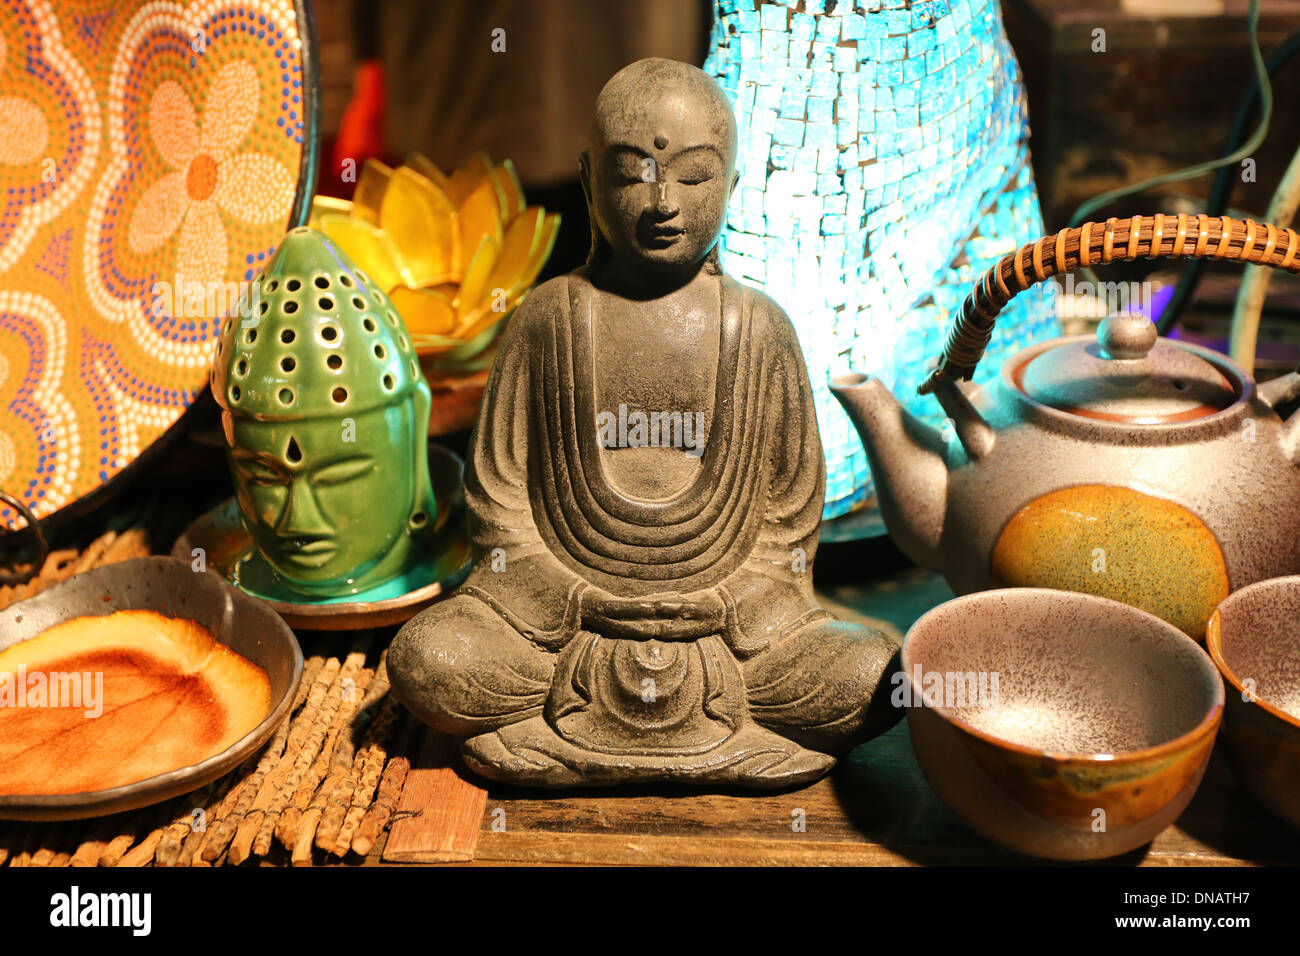 Una estatuilla de Buda sereno, tetera, y relax regalos Foto de stock